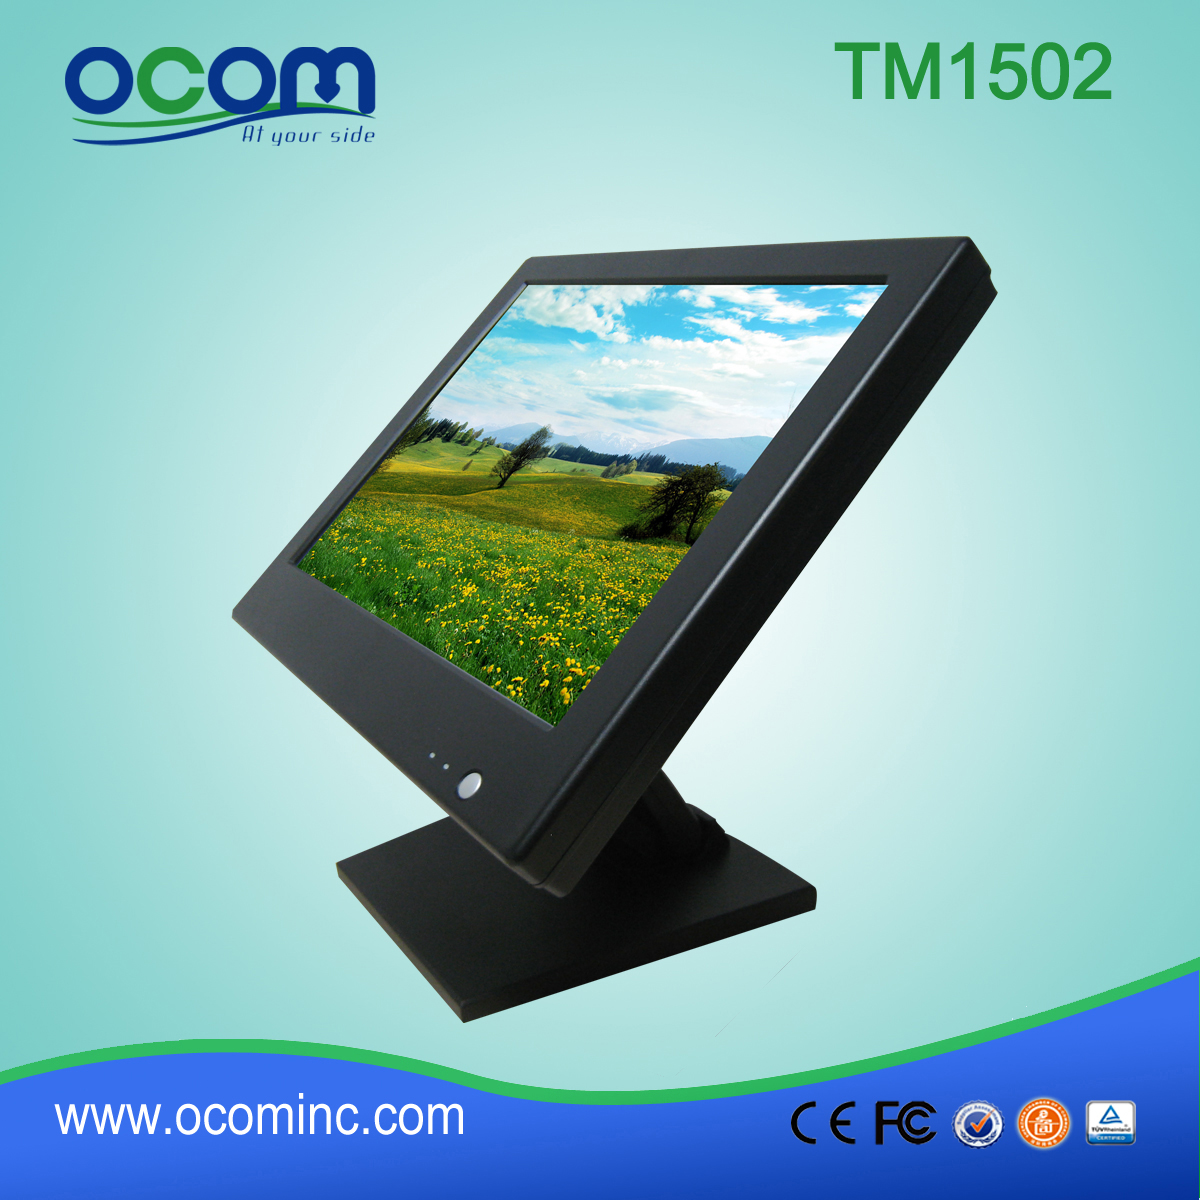 TM1502 在中国 LED 触摸显示器价格